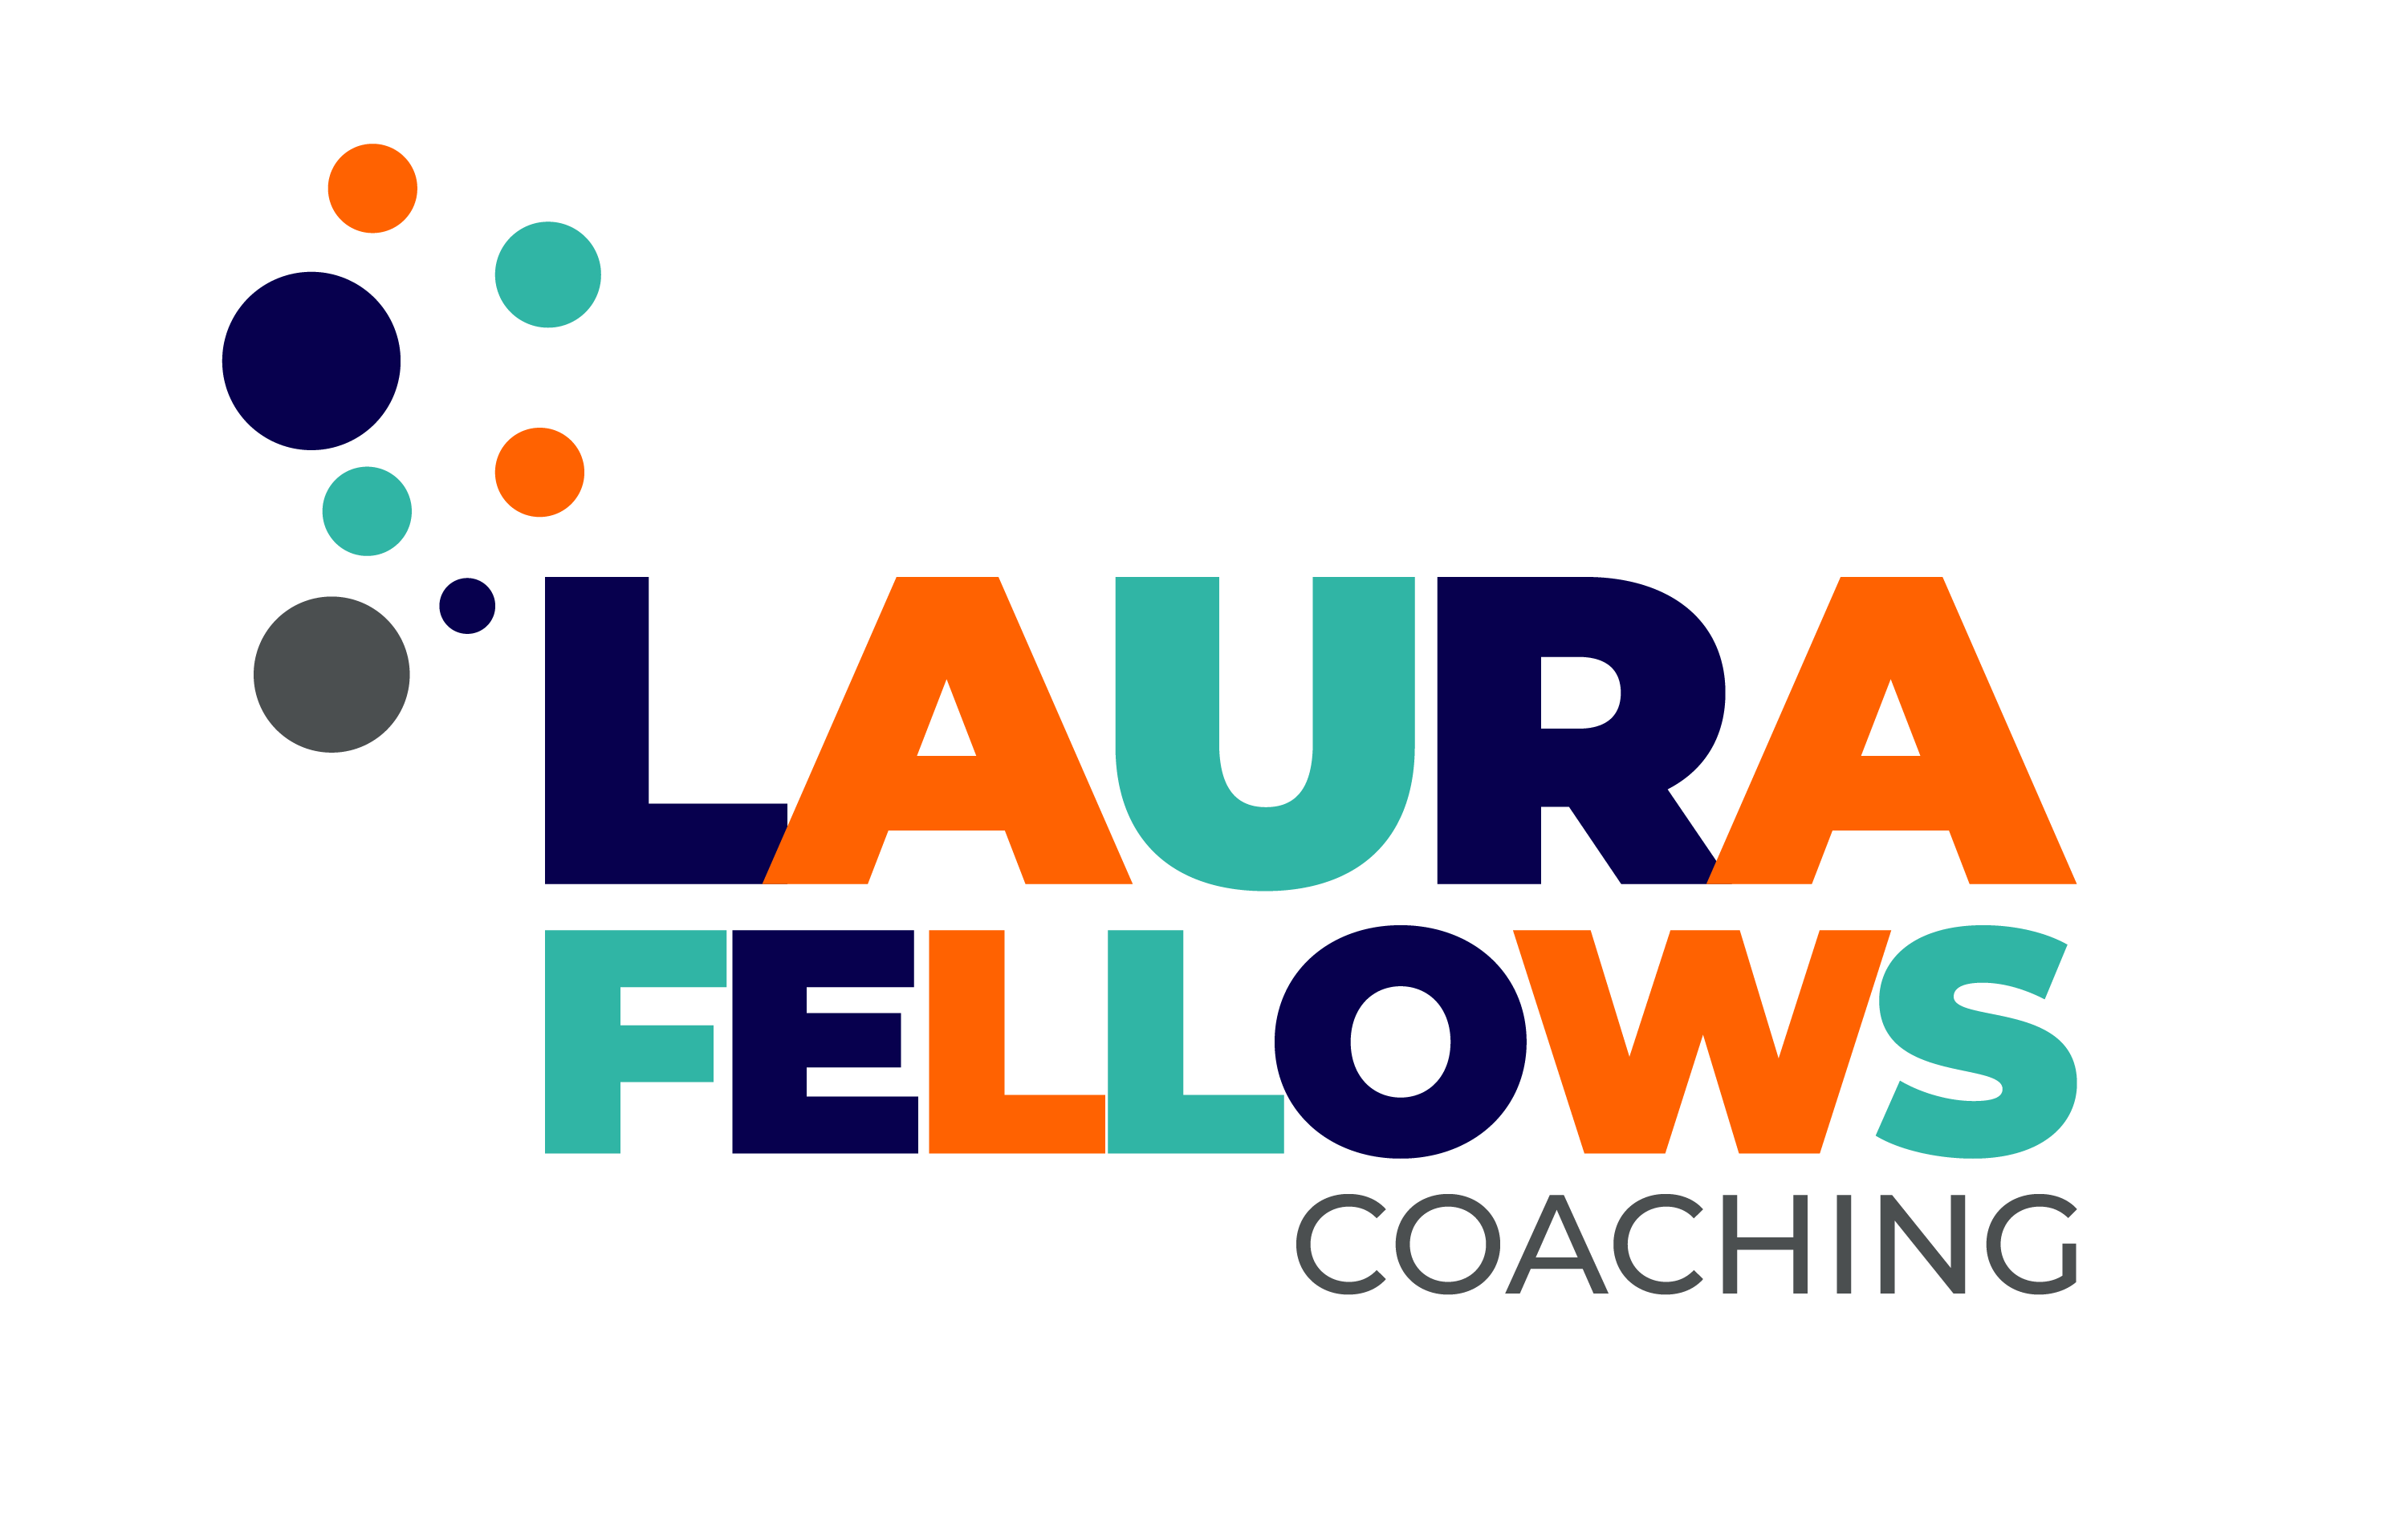 Laura Fellows Coaching